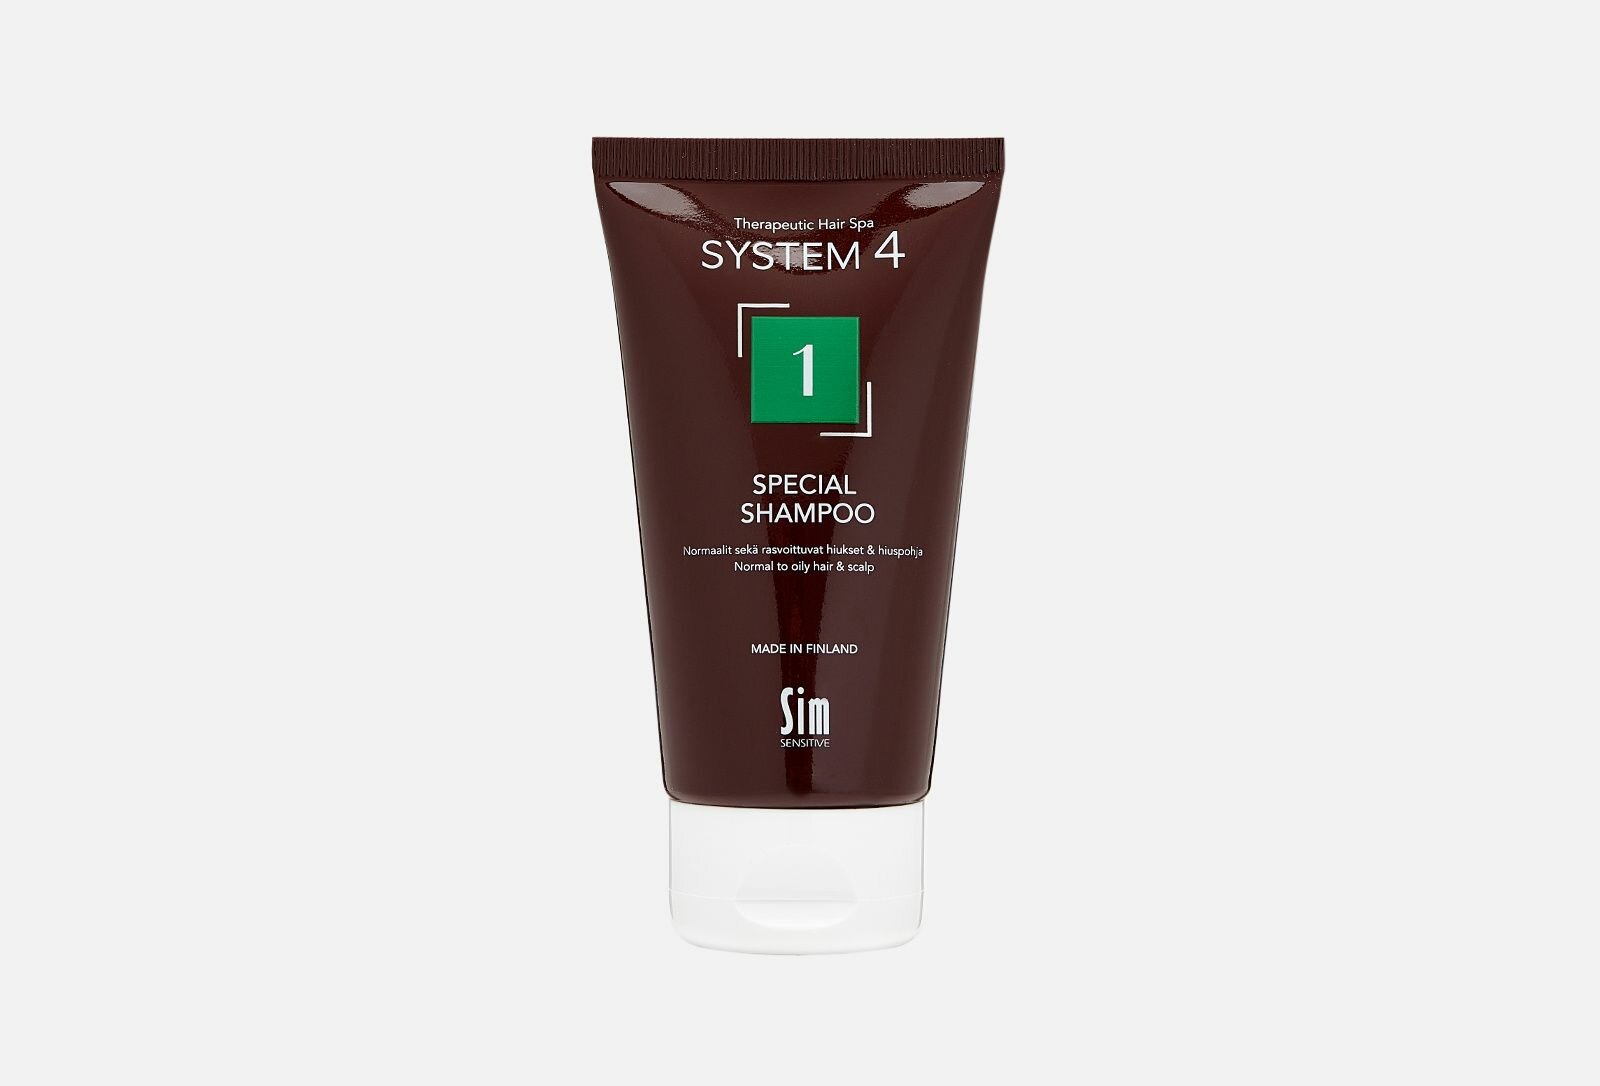 Терапевтический шампунь №1 для нормальной и жирной кожи головы 1 Special Shampoo